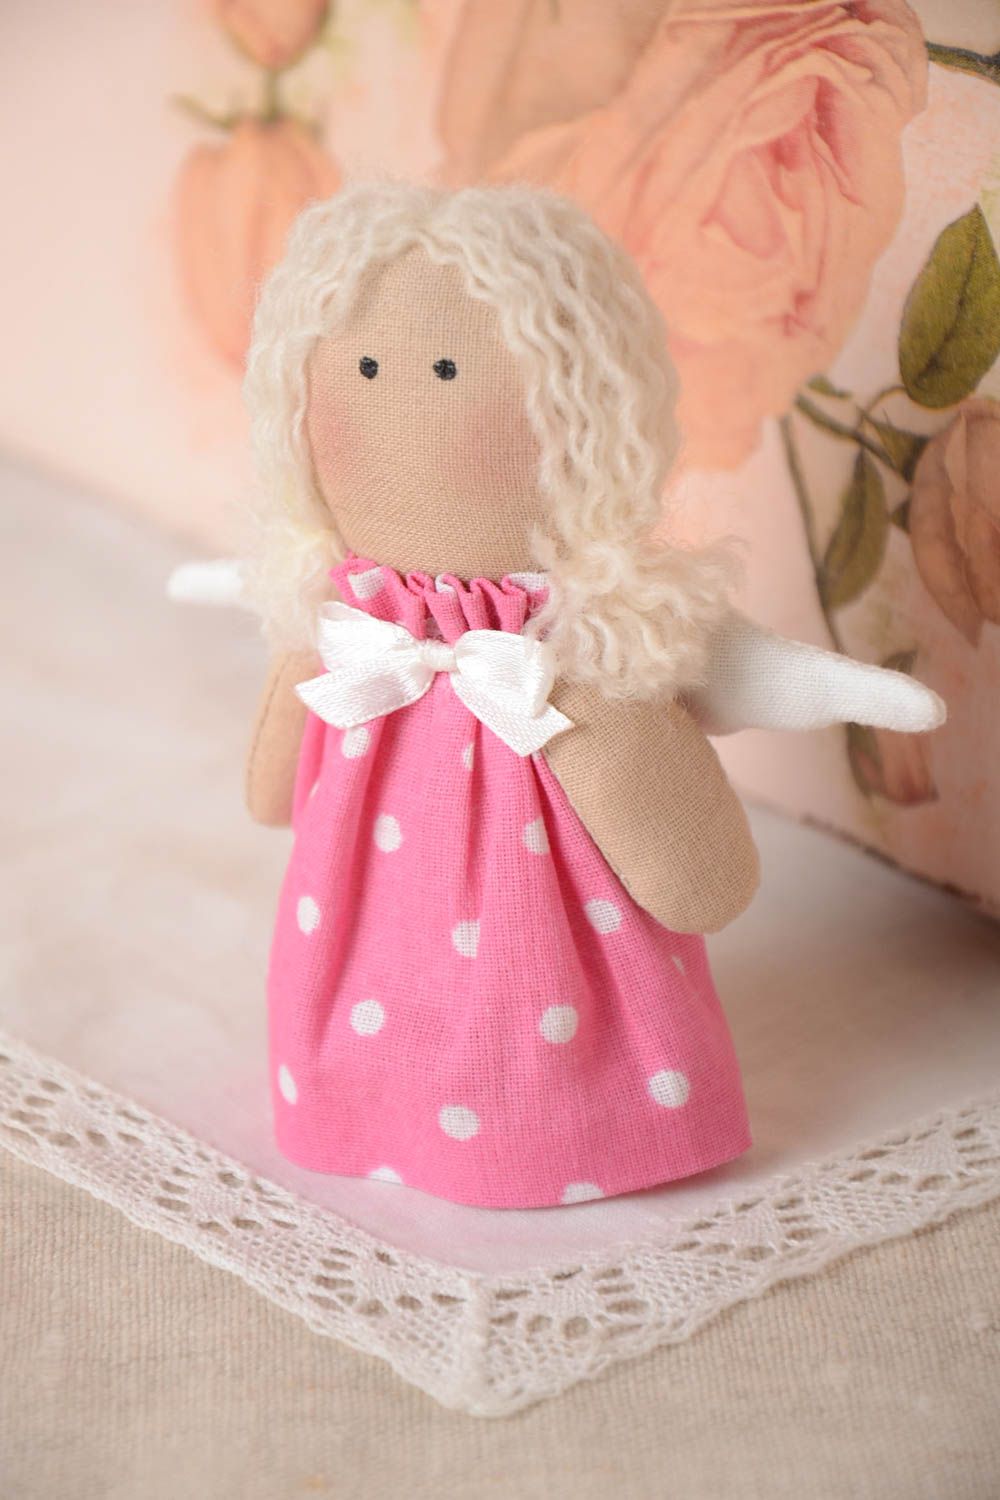 Handmade Stoff Puppe Kinder Spielzeug Engel Geschenk klein im rosa Kleid foto 1